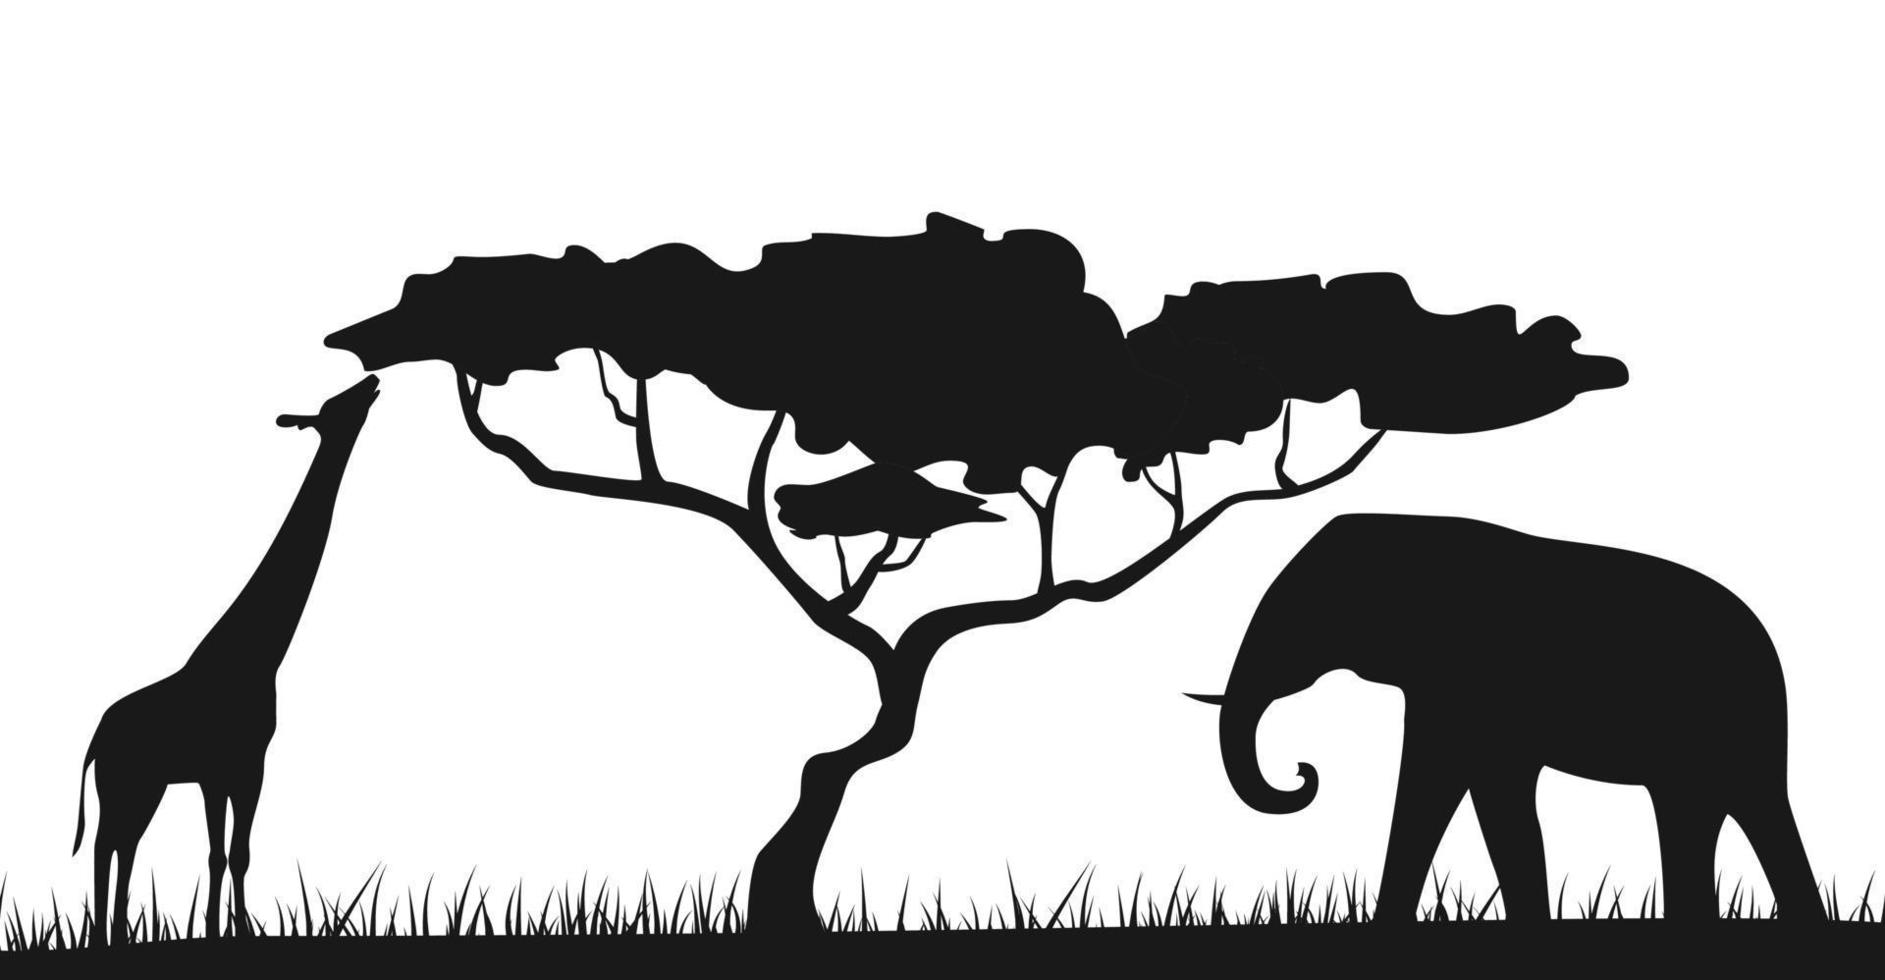 ett afrikansk safari djur- savann silhuett bakgrund landskap scen. elefant och giraff vektor illustration. vektor.